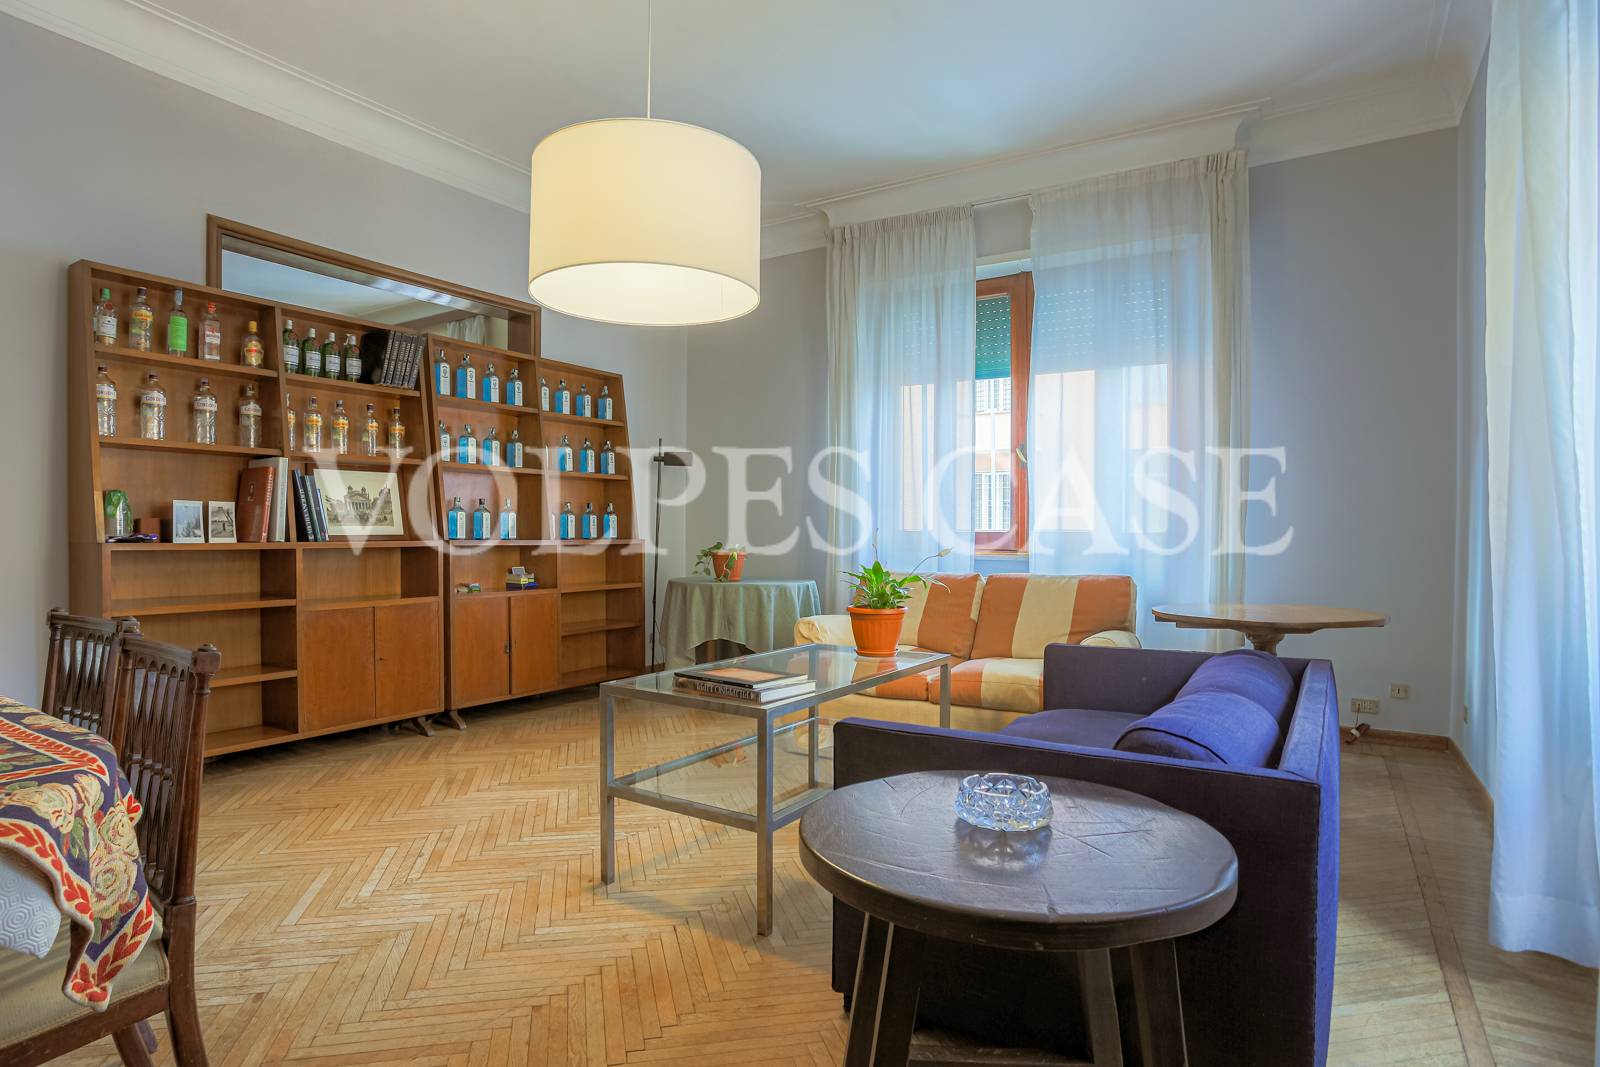 Appartamento in vendita a Roma, 8 locali, zona Zona: 2 . Flaminio, Parioli, Pinciano, Villa Borghese, prezzo € 1.280.000 | CambioCasa.it